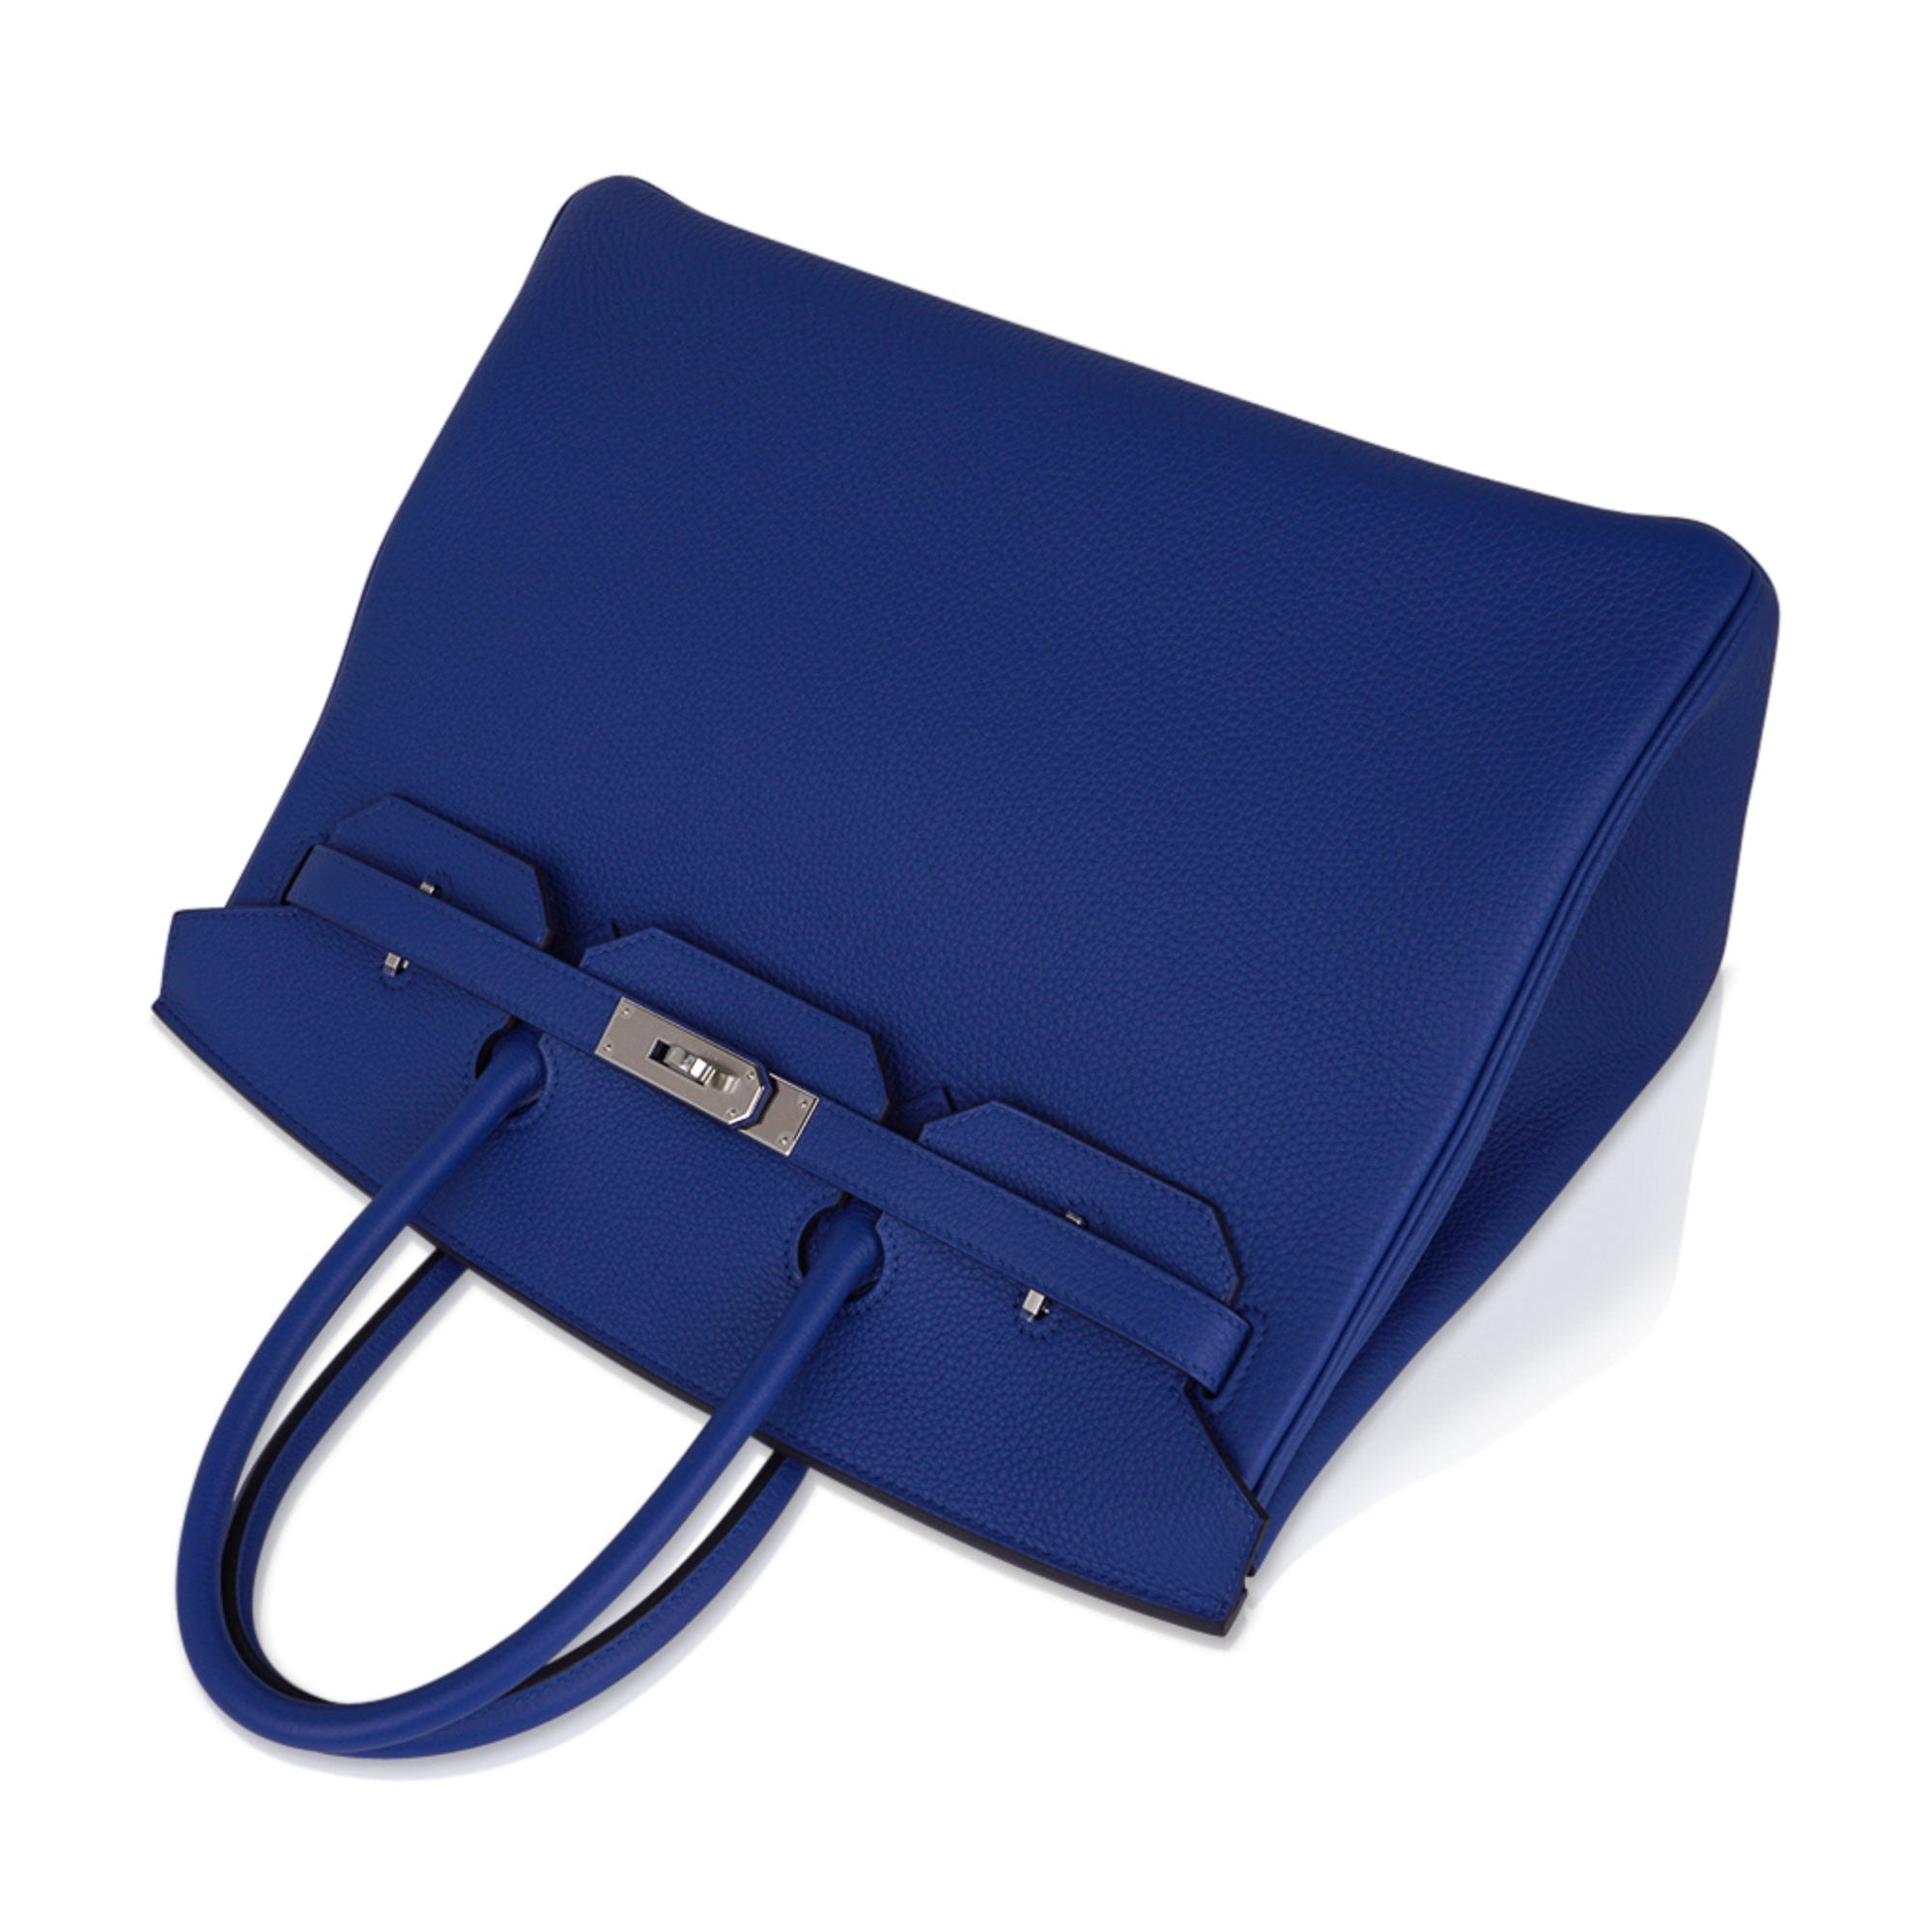 Hermes Birkin 35 Blue de France Bag Palladium Hardware Togo Leather